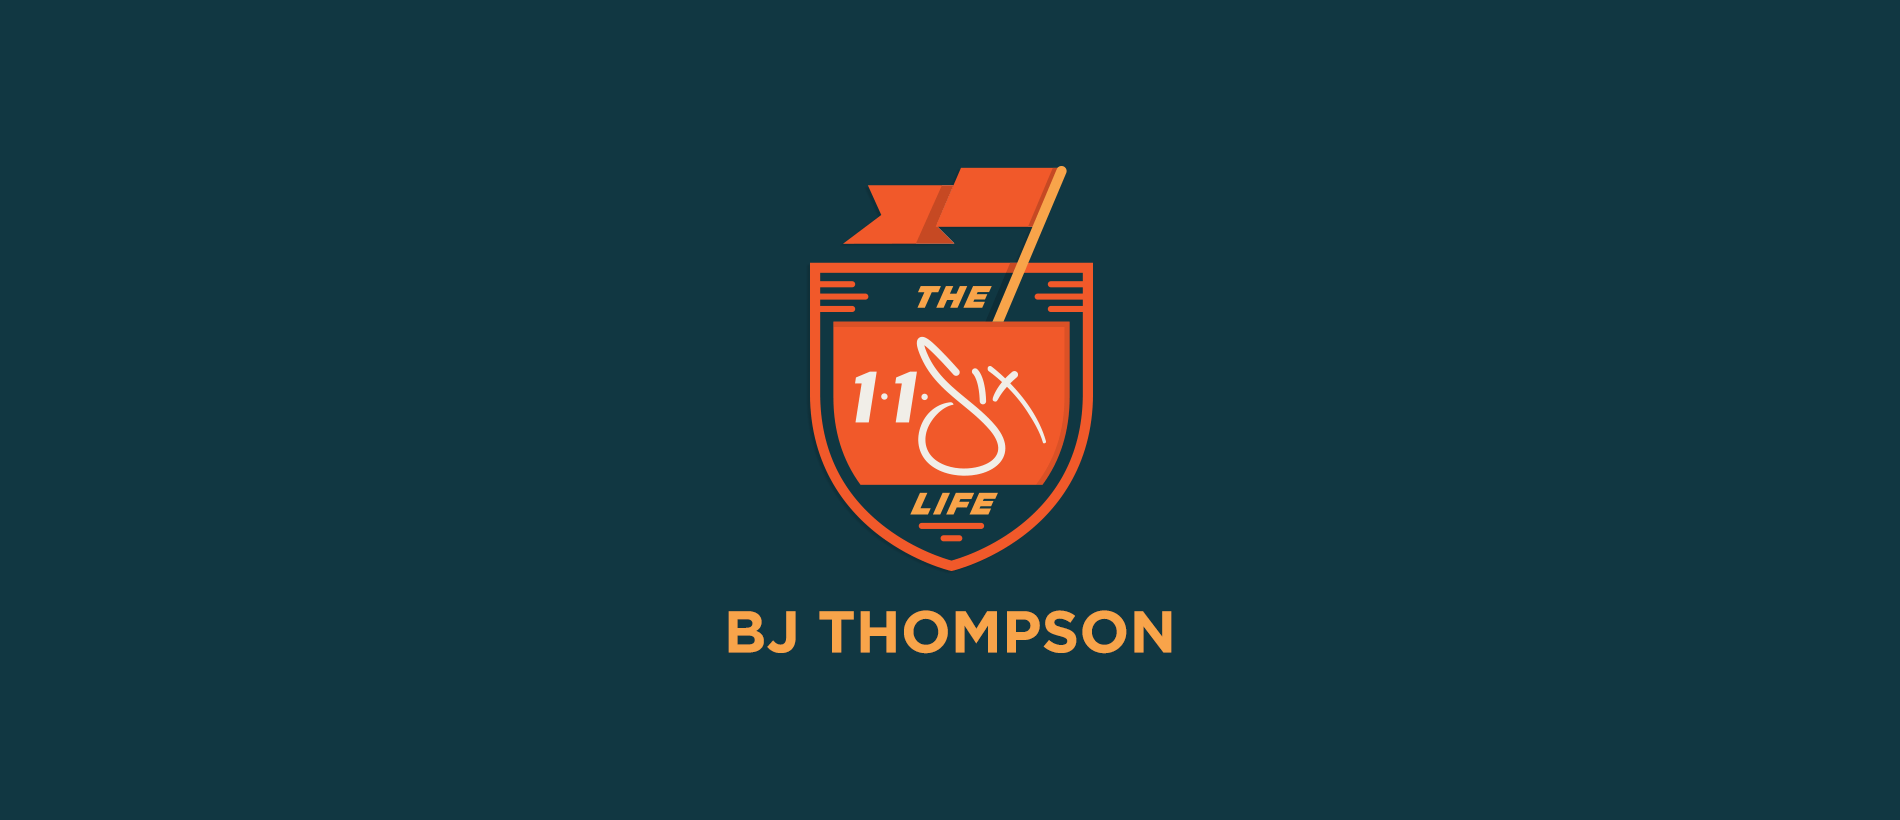 The 116 Life x BJ Thompson